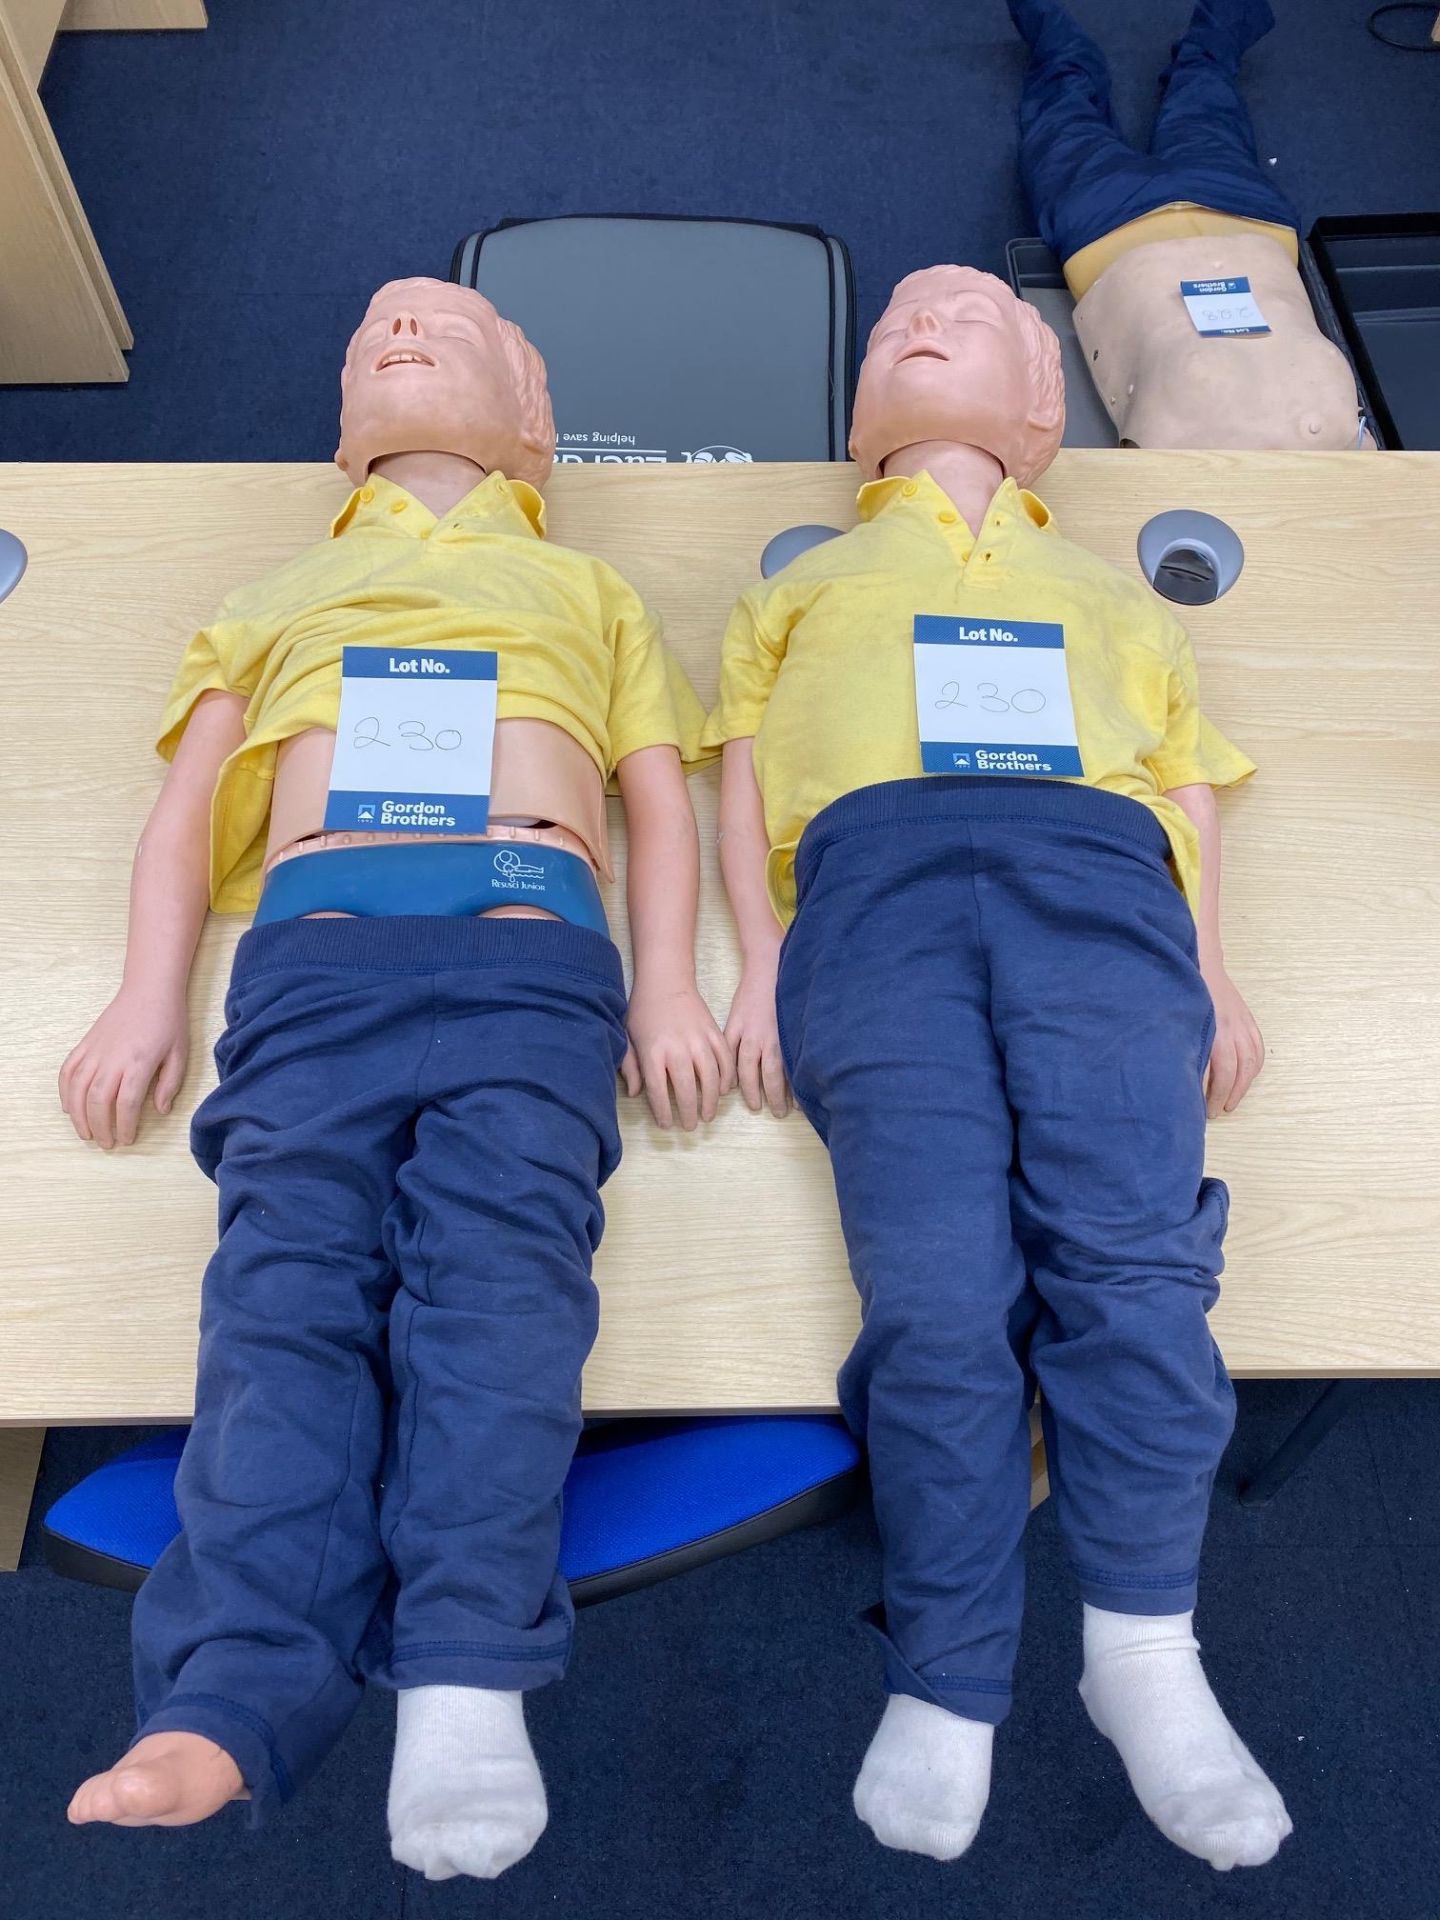 Two Laerdal junior resuscitations mannequins